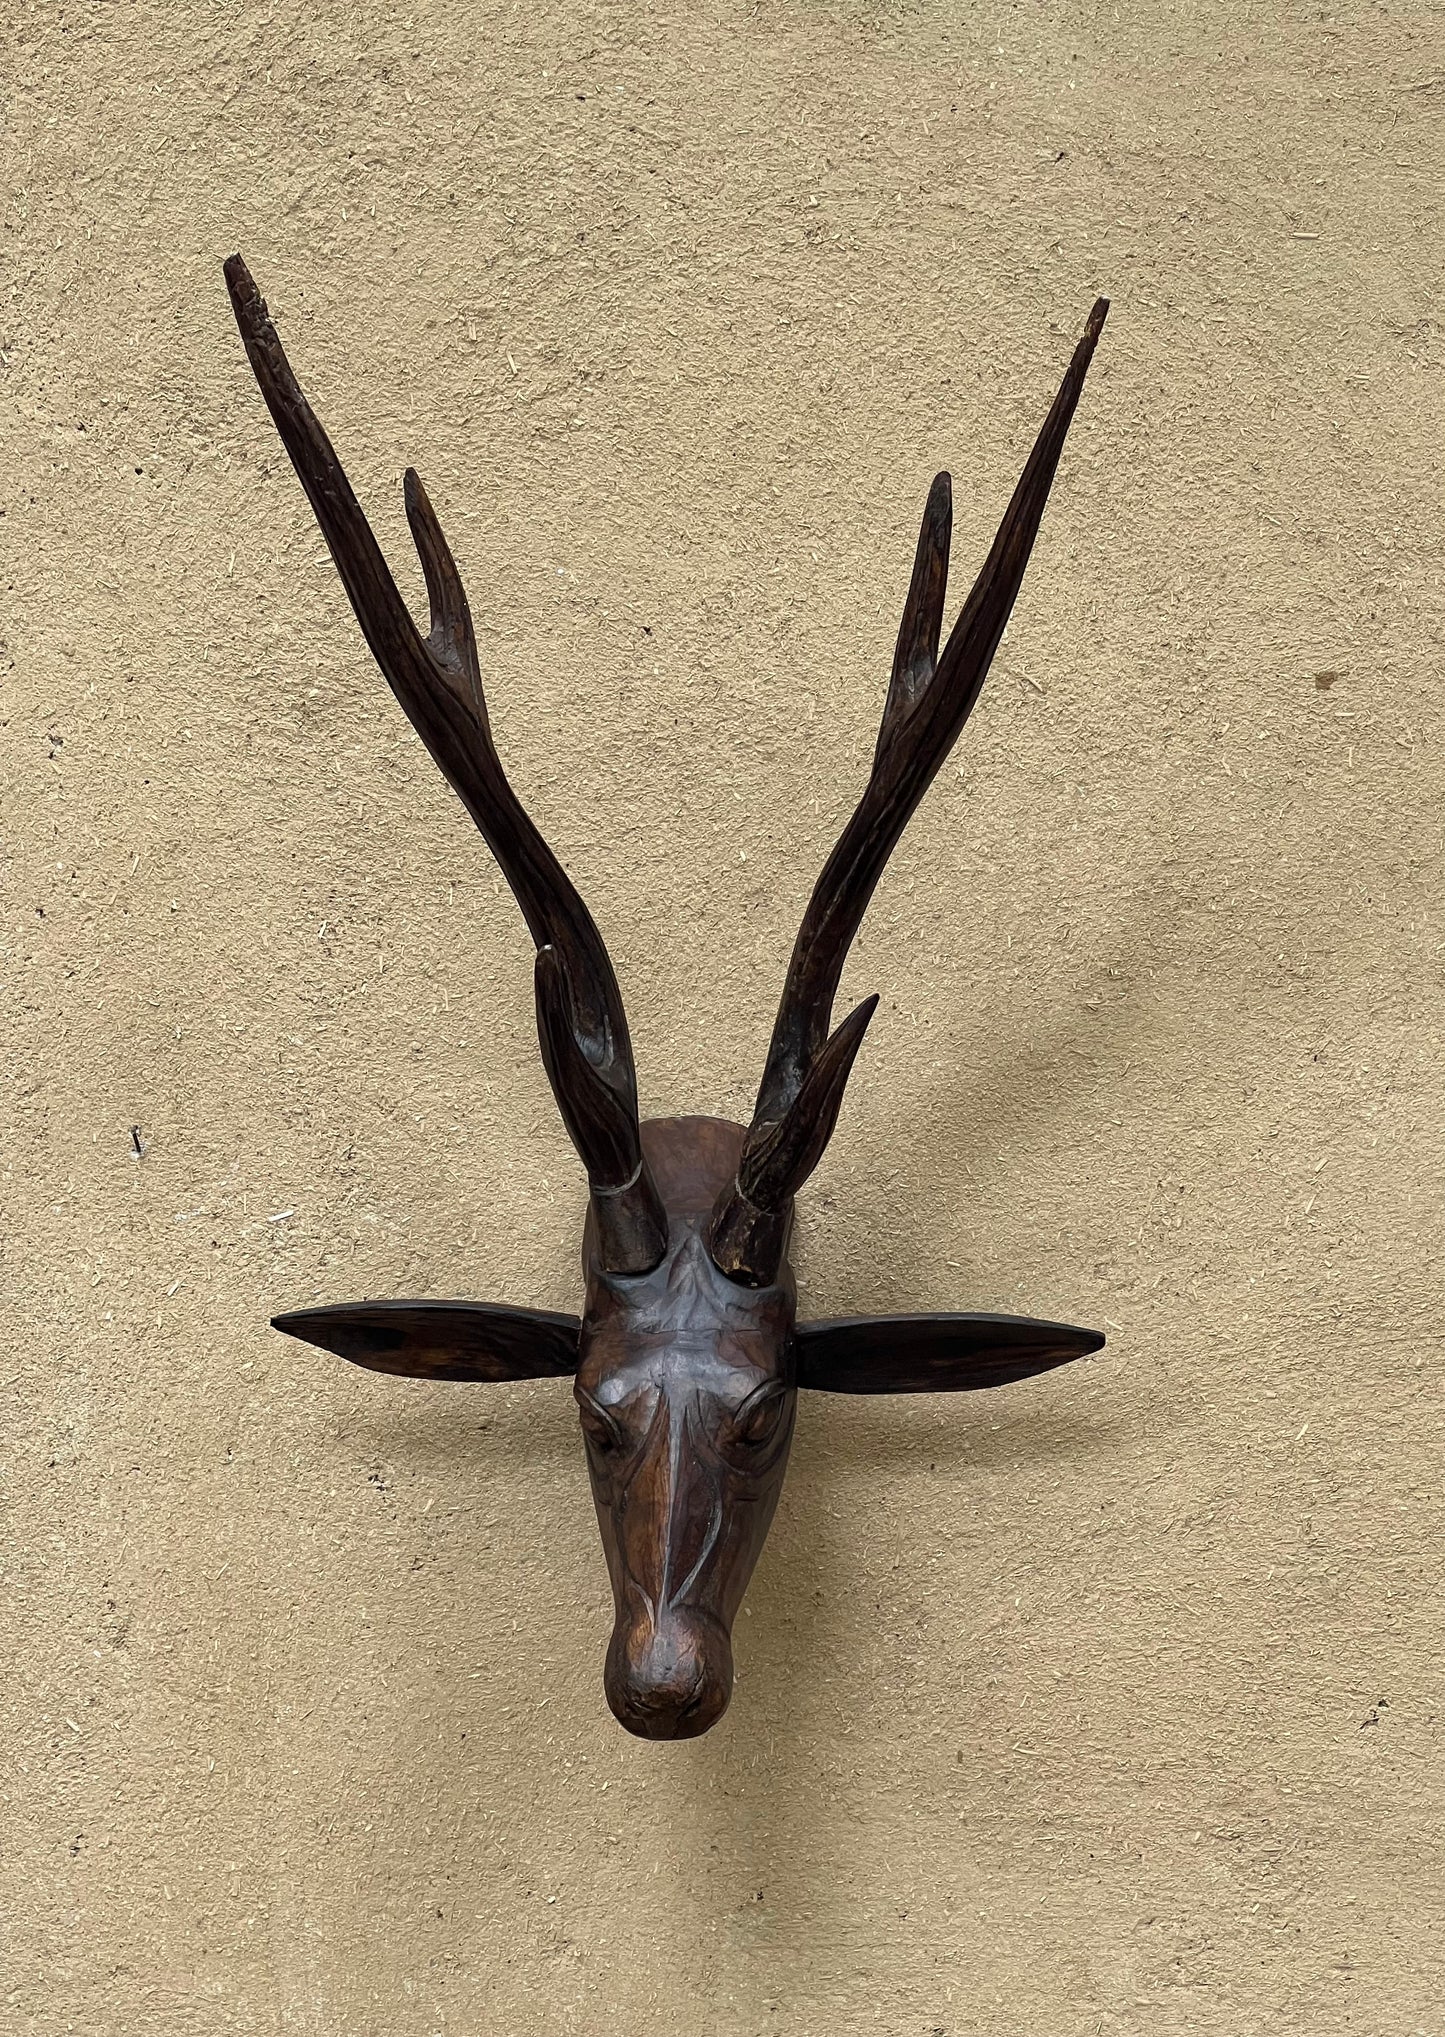 Wooden Deer Head